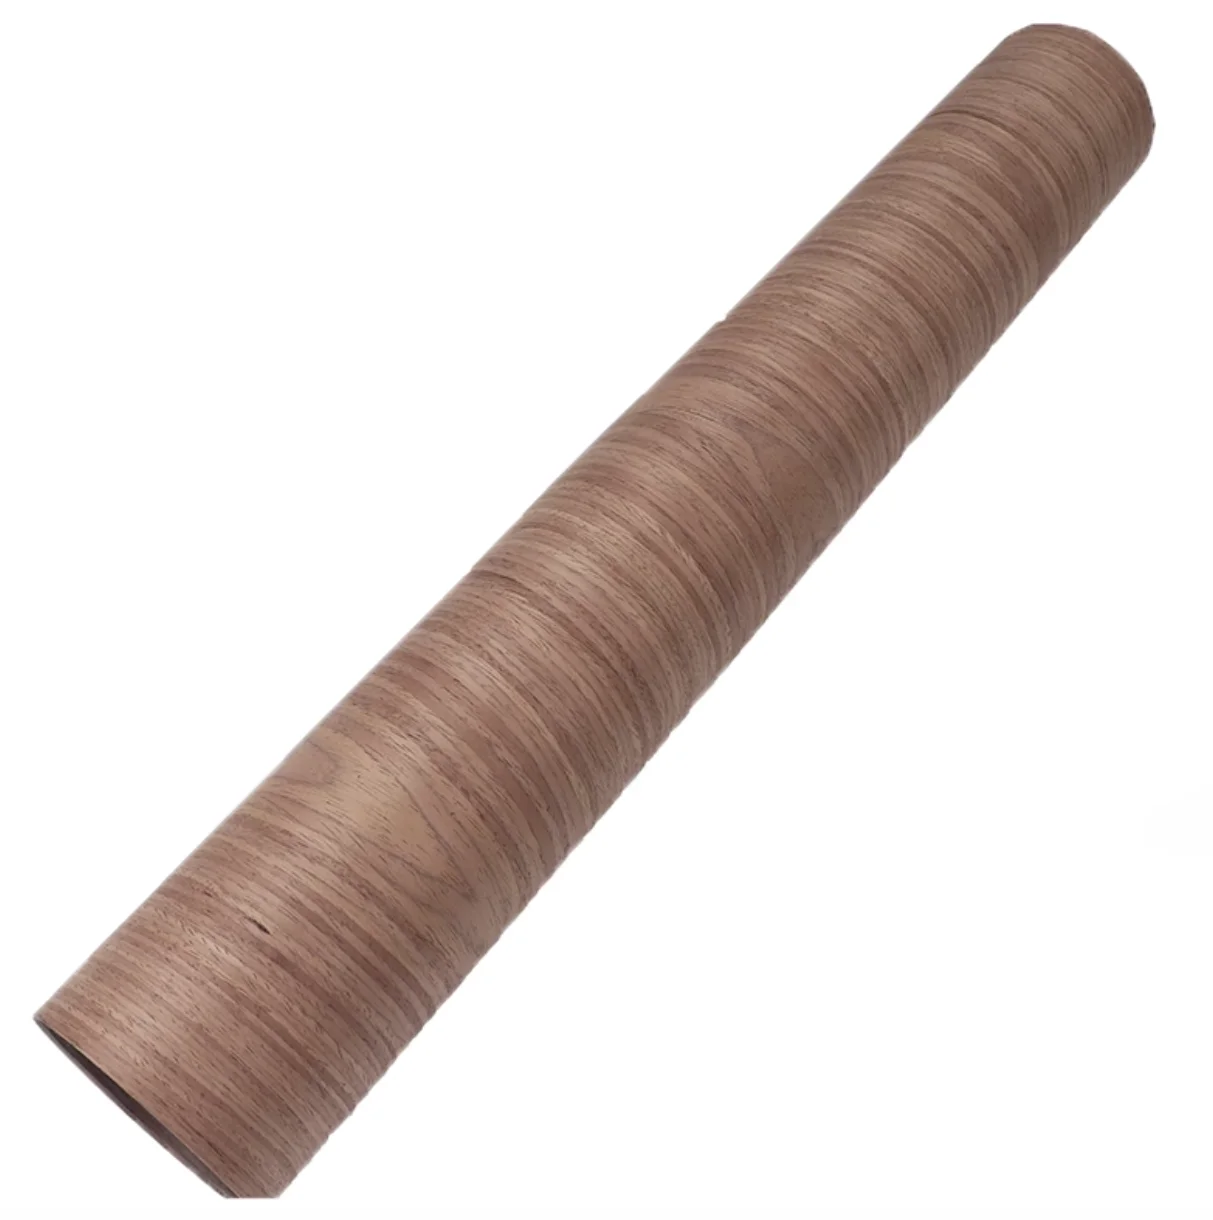 2pcs 930x140mm thickness:2mm 100% Natural Solid Black Walnut Wood Veneer Thin  Wood Sheets Chip - AliExpress